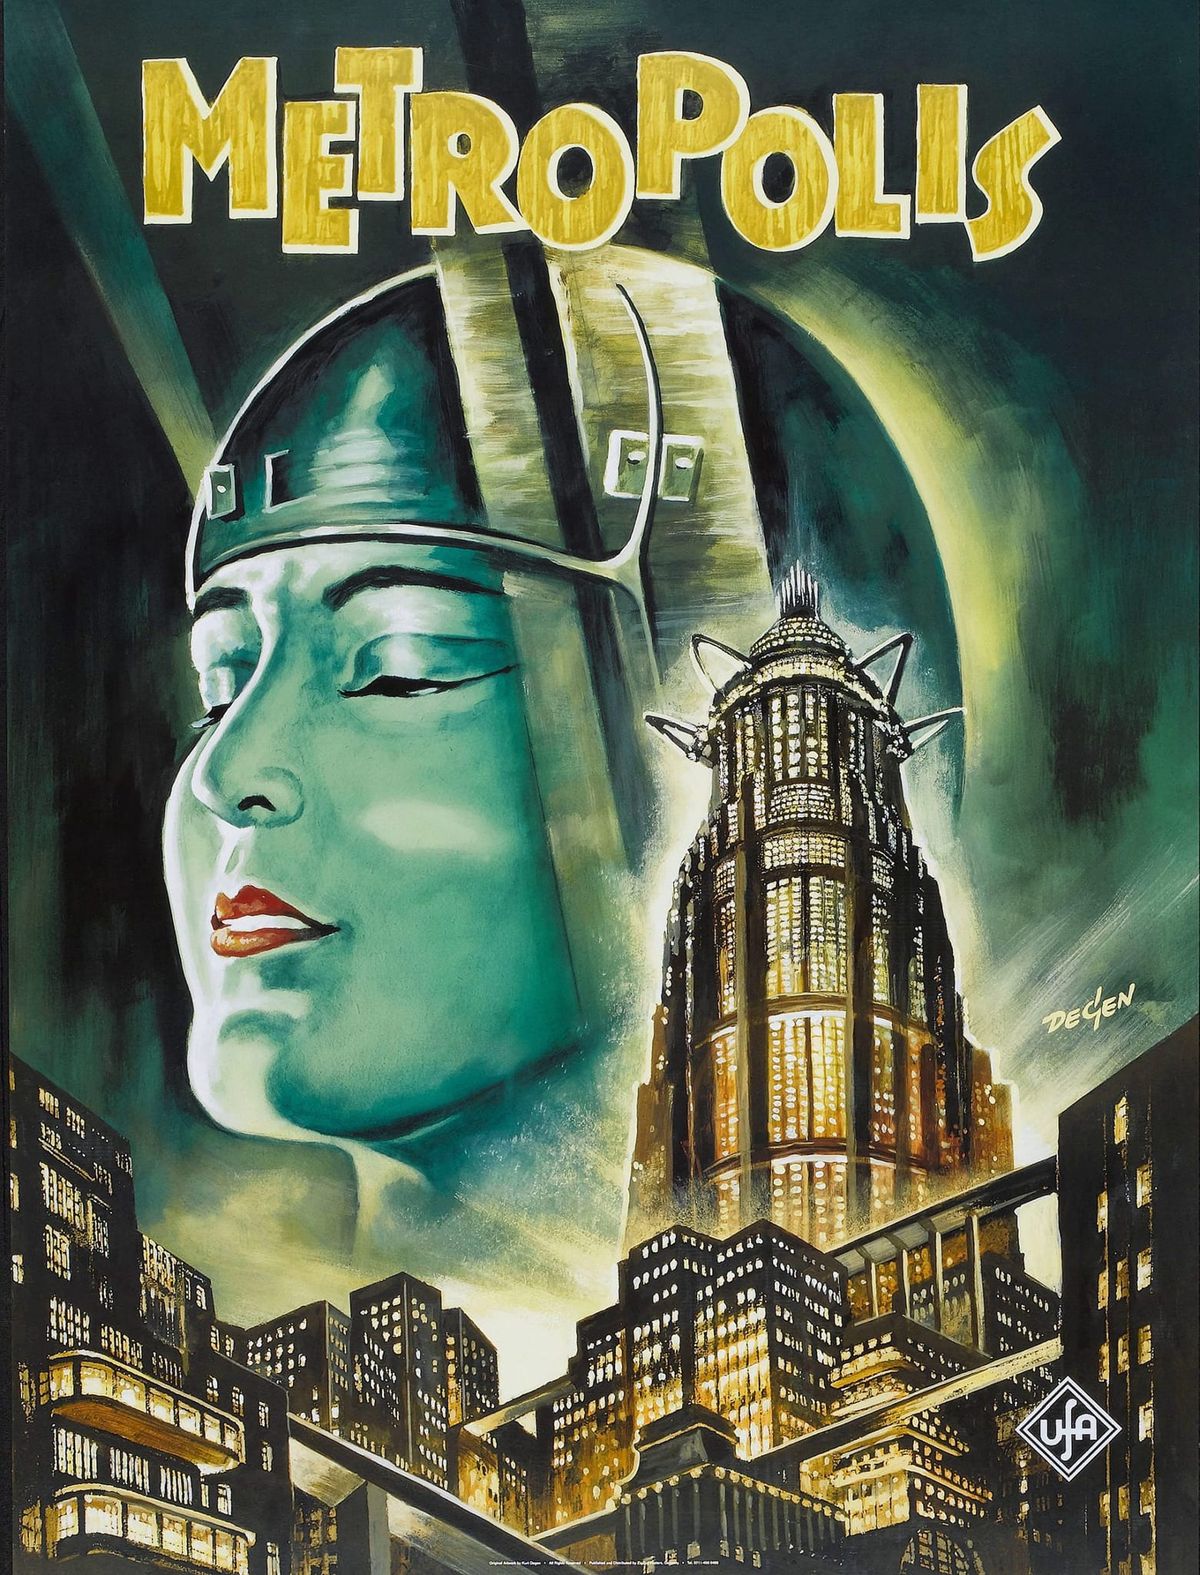 Tower B&W: METROPOLIS (1927)